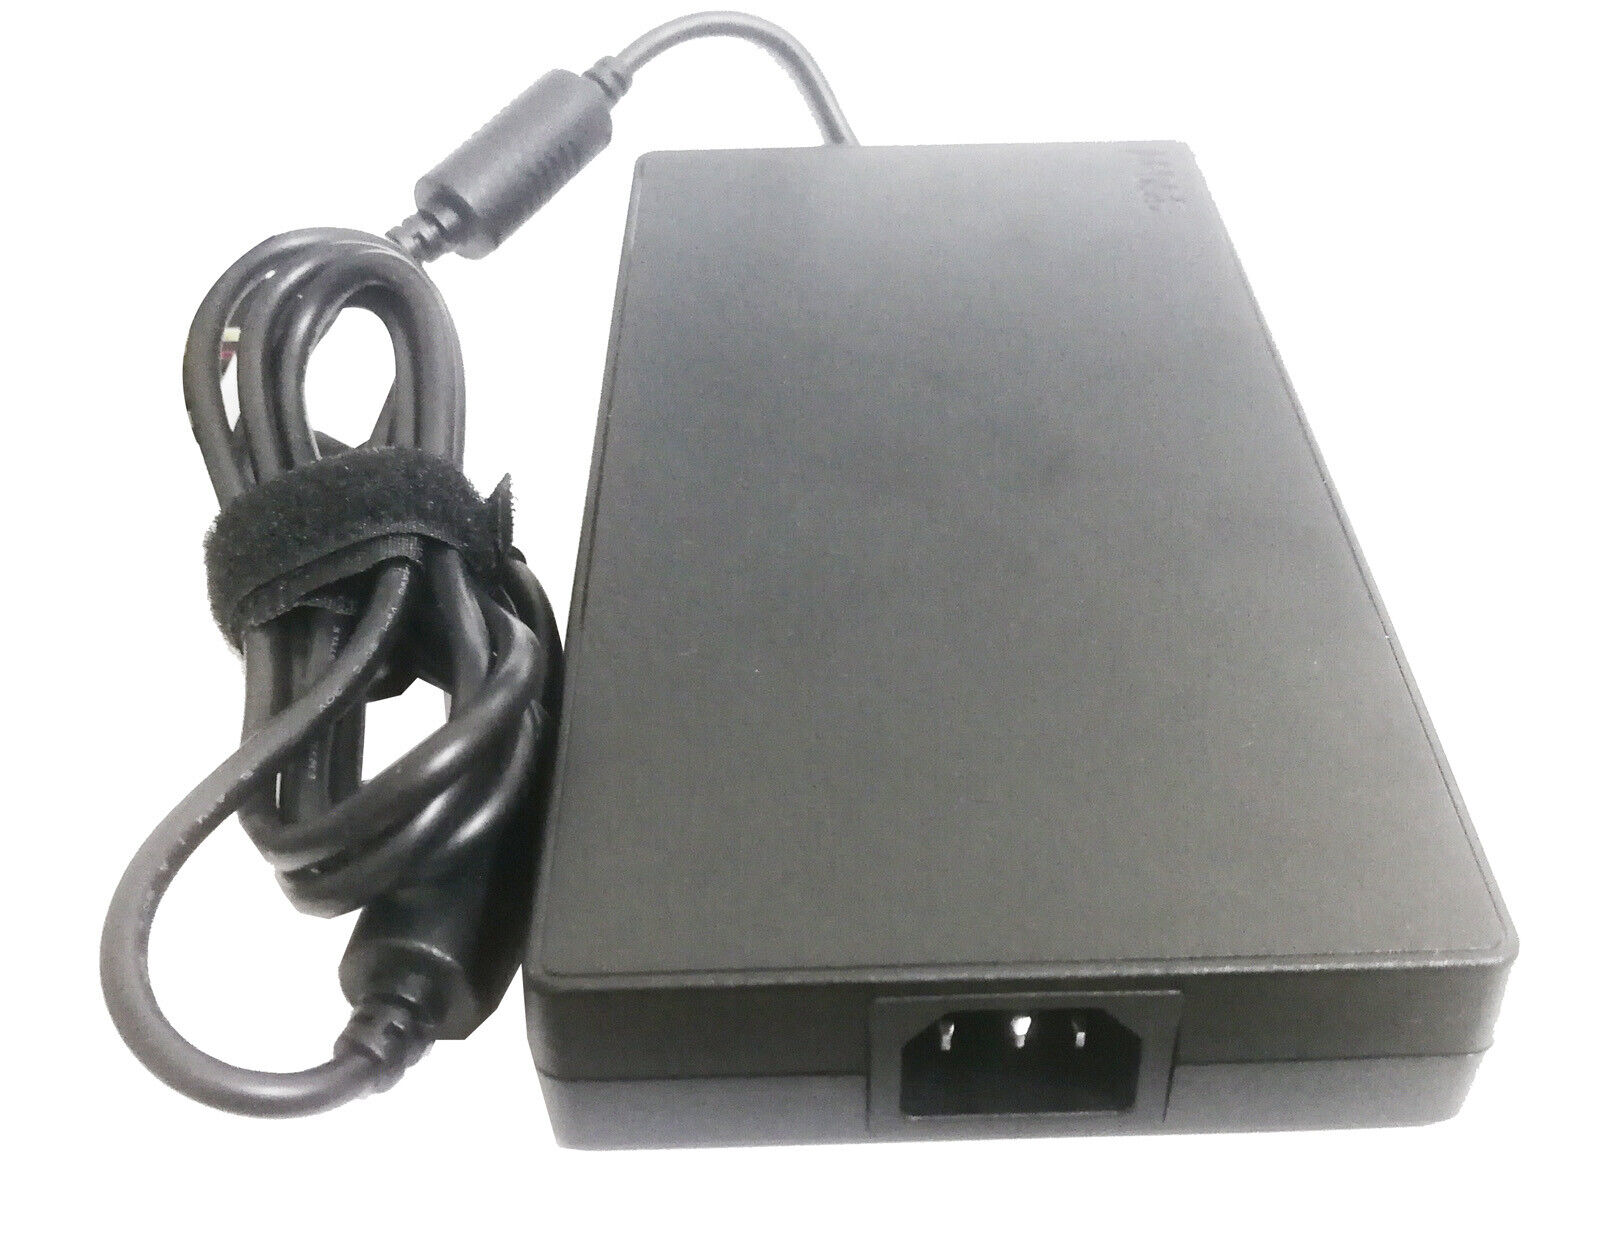 Sạc dành cho (Adapter For) Lenovo ThinkPad R9000P Charger 300W 20V 15A USB ADL300SDC3A AC